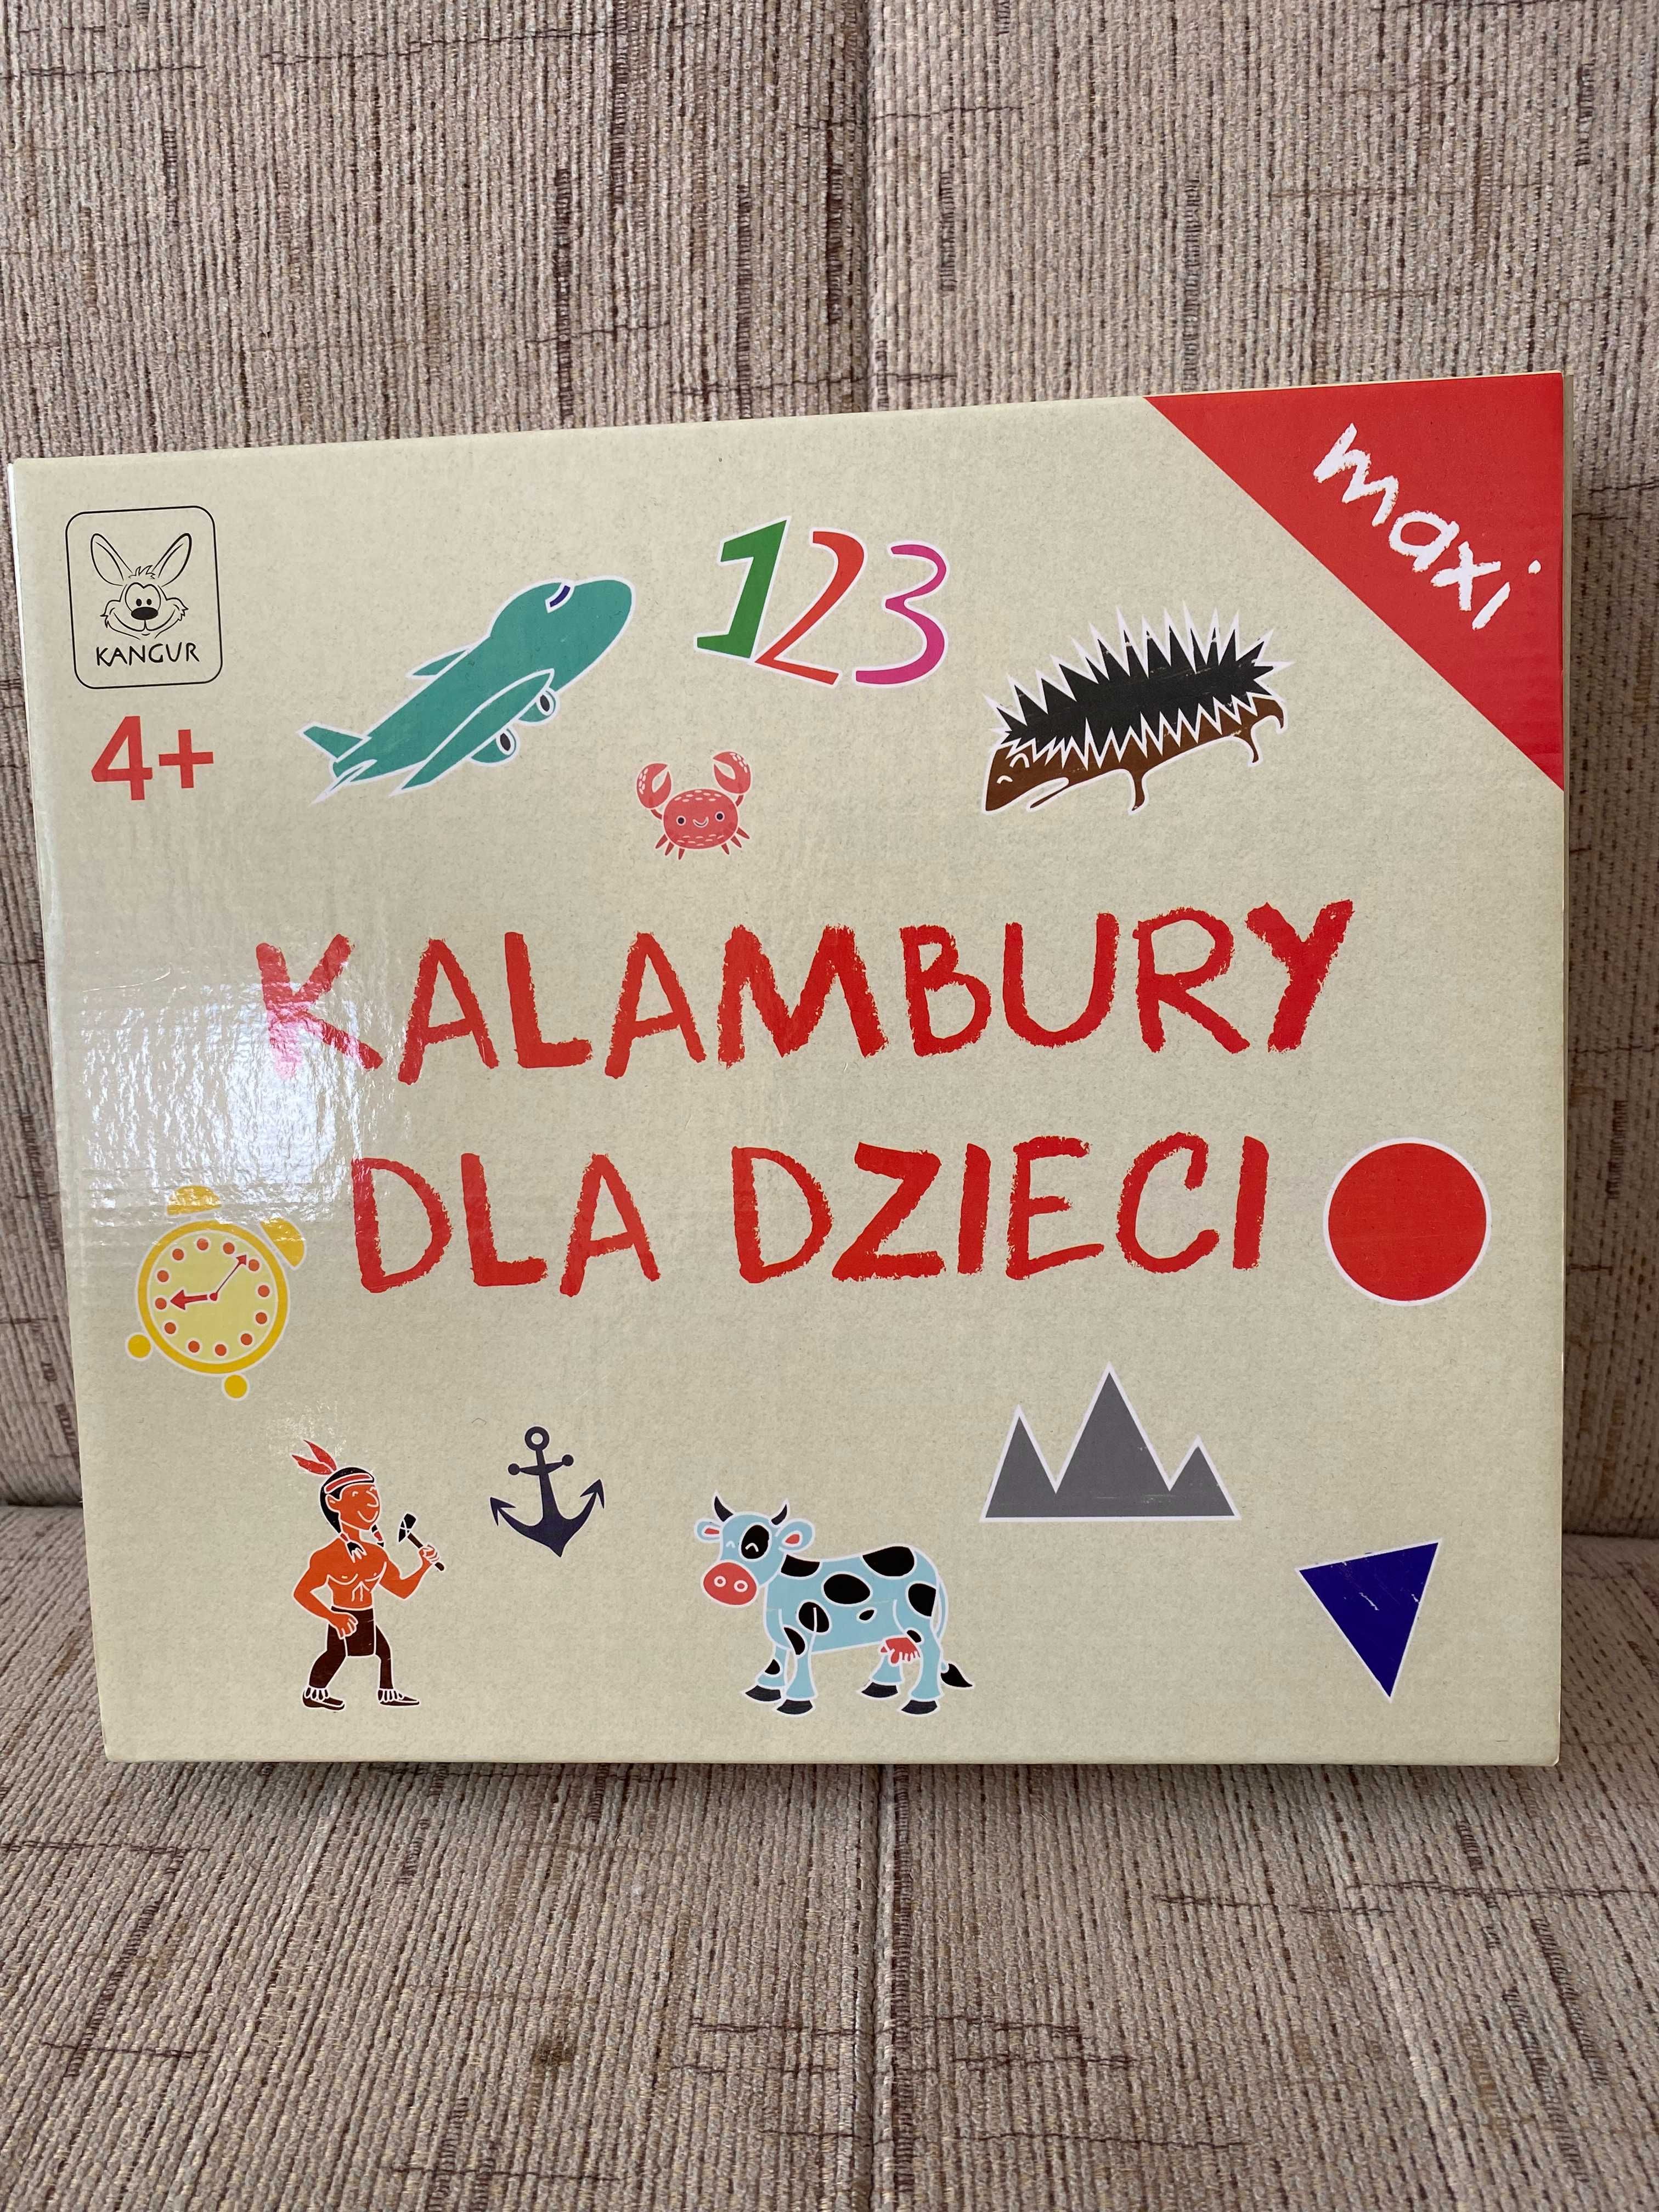 Kalambury dla dzieci Kangur 4+